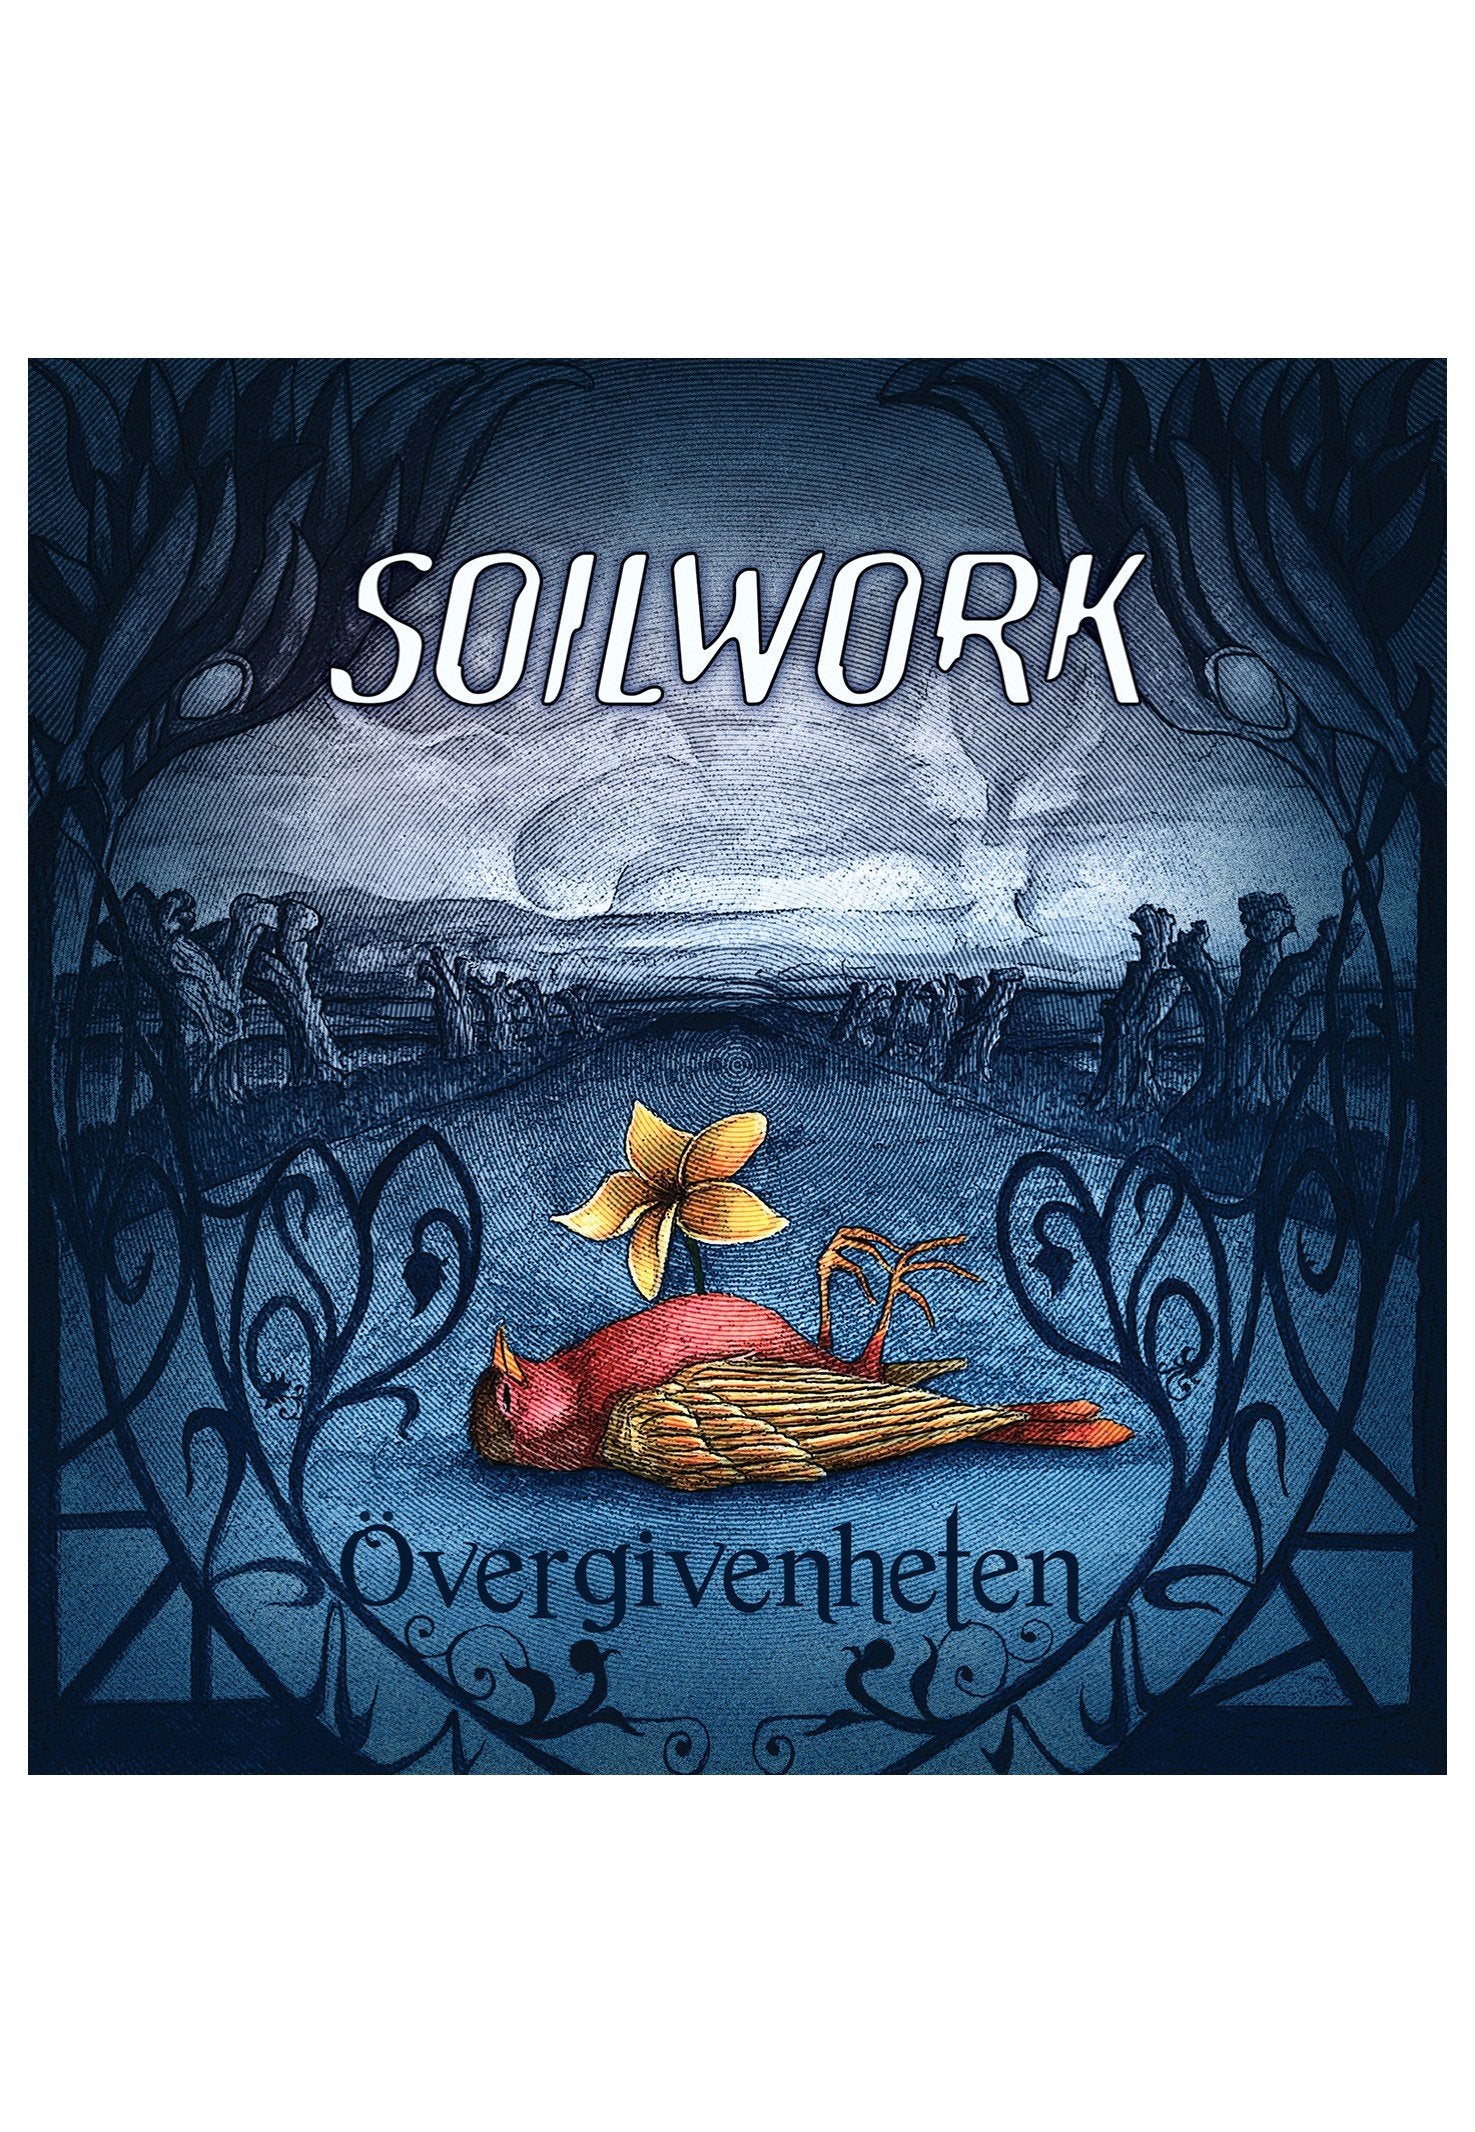 Soilwork - Övergivenheten - CD